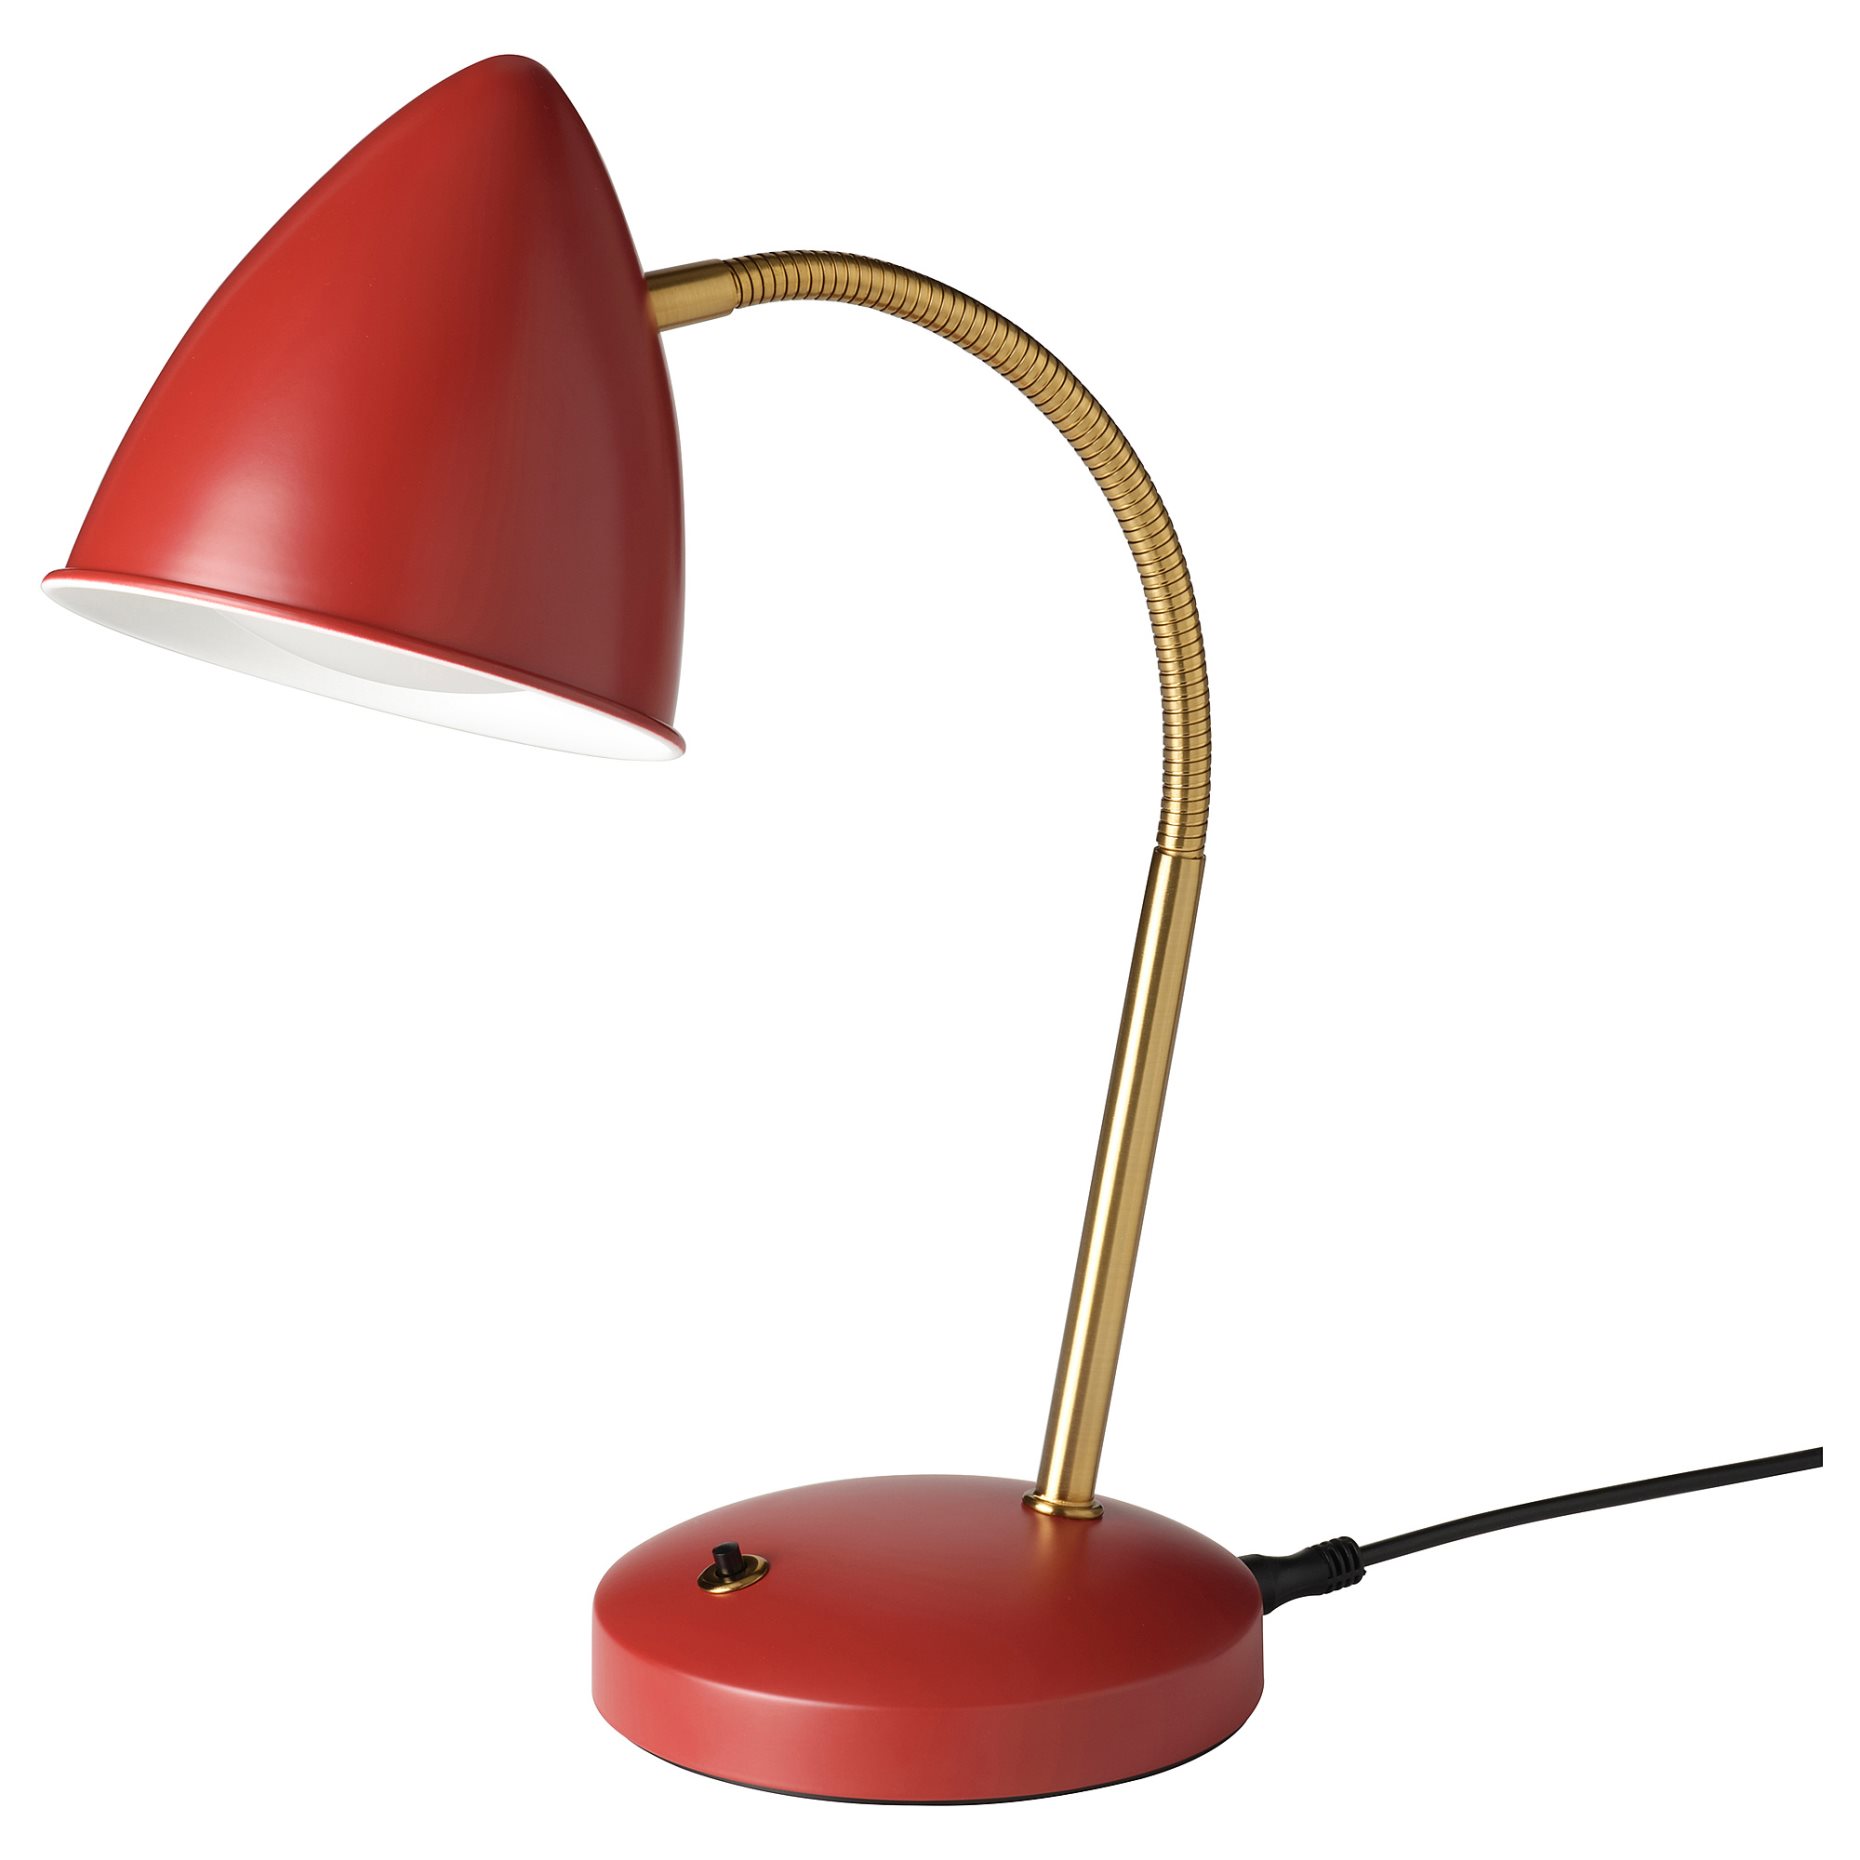 ISNÅLEN, work lamp with built-in LED light source, 805.200.11